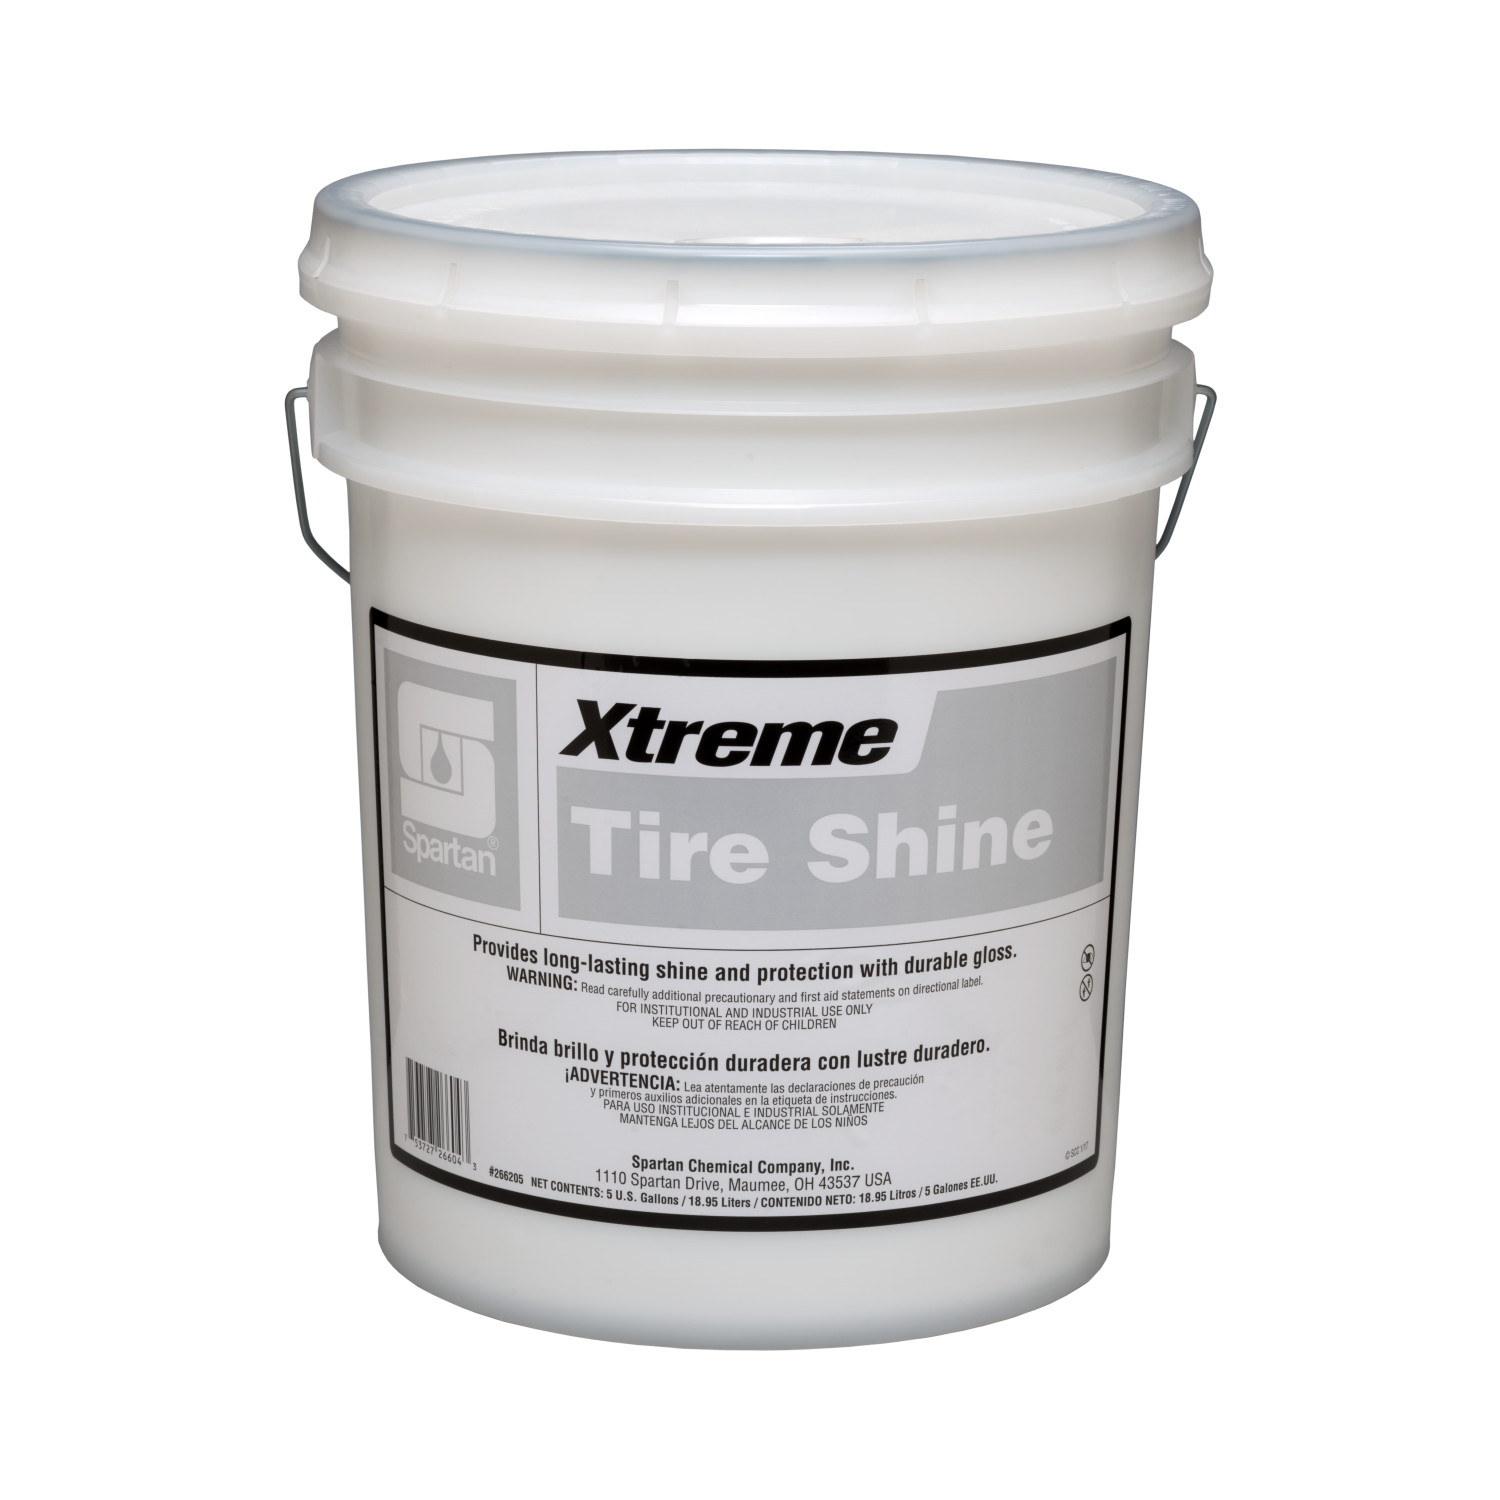 Xtreme® Tire Shine 5 gallon pail